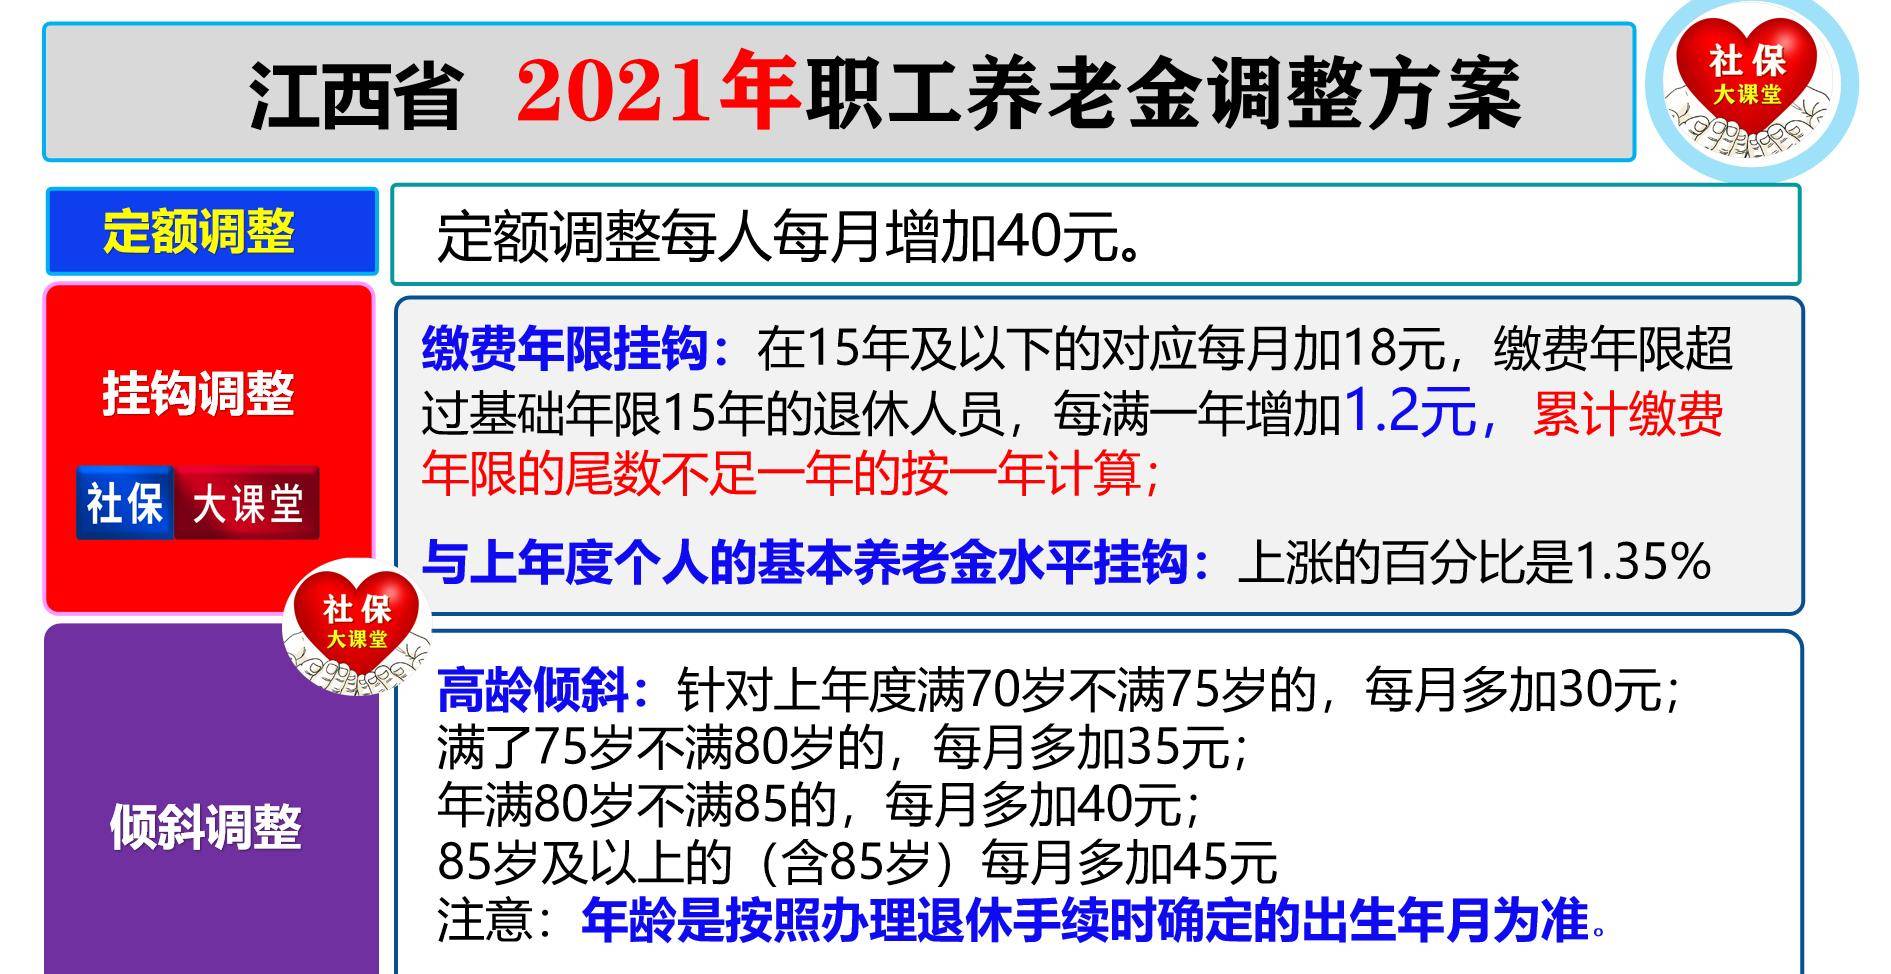 12月,江西省社保和养老金有六件大事,前沿动态了解一下